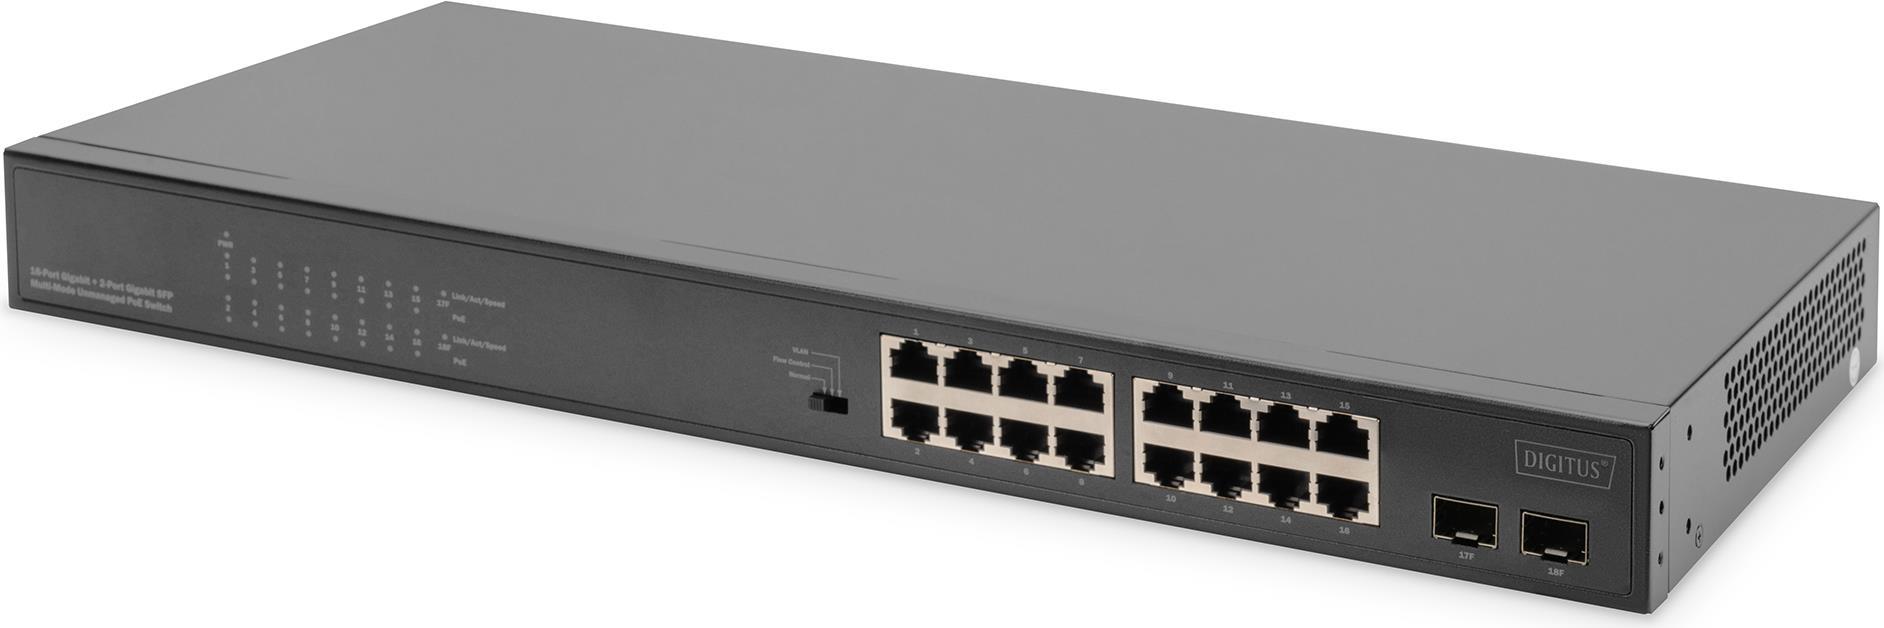 Digitus DN-95347-1 Netzwerk-Switch Unmanaged Gigabit Ethernet (10/100/1000) 1U Grau (DN-95347-1)